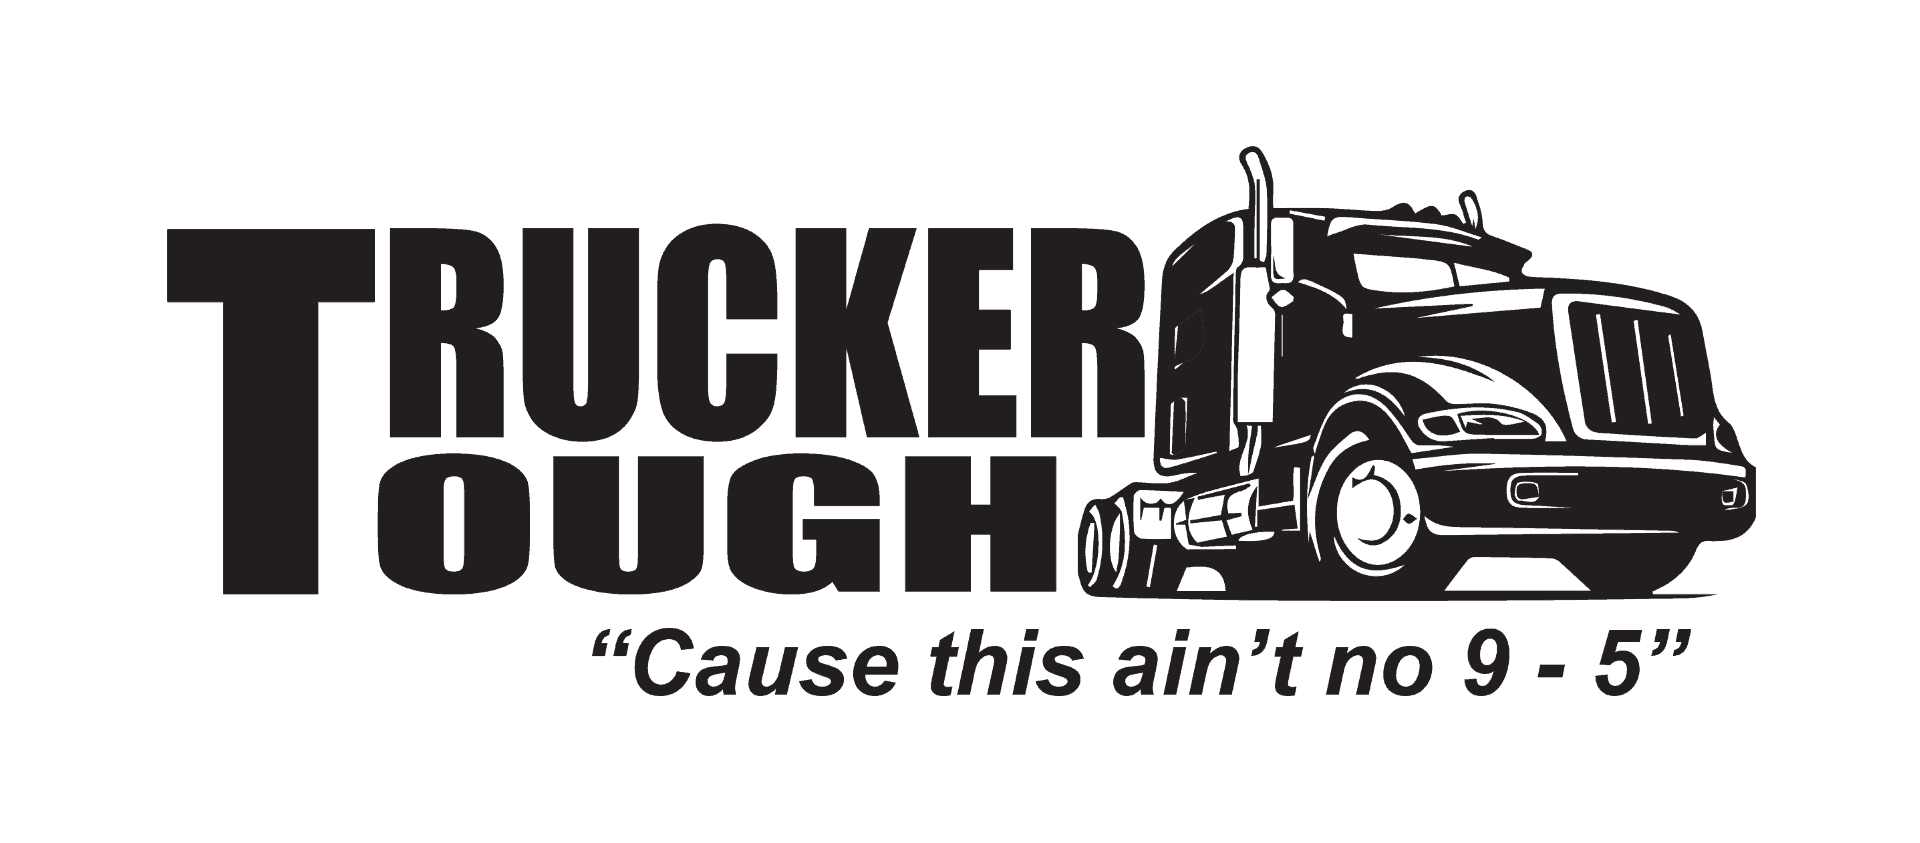 trucker tough